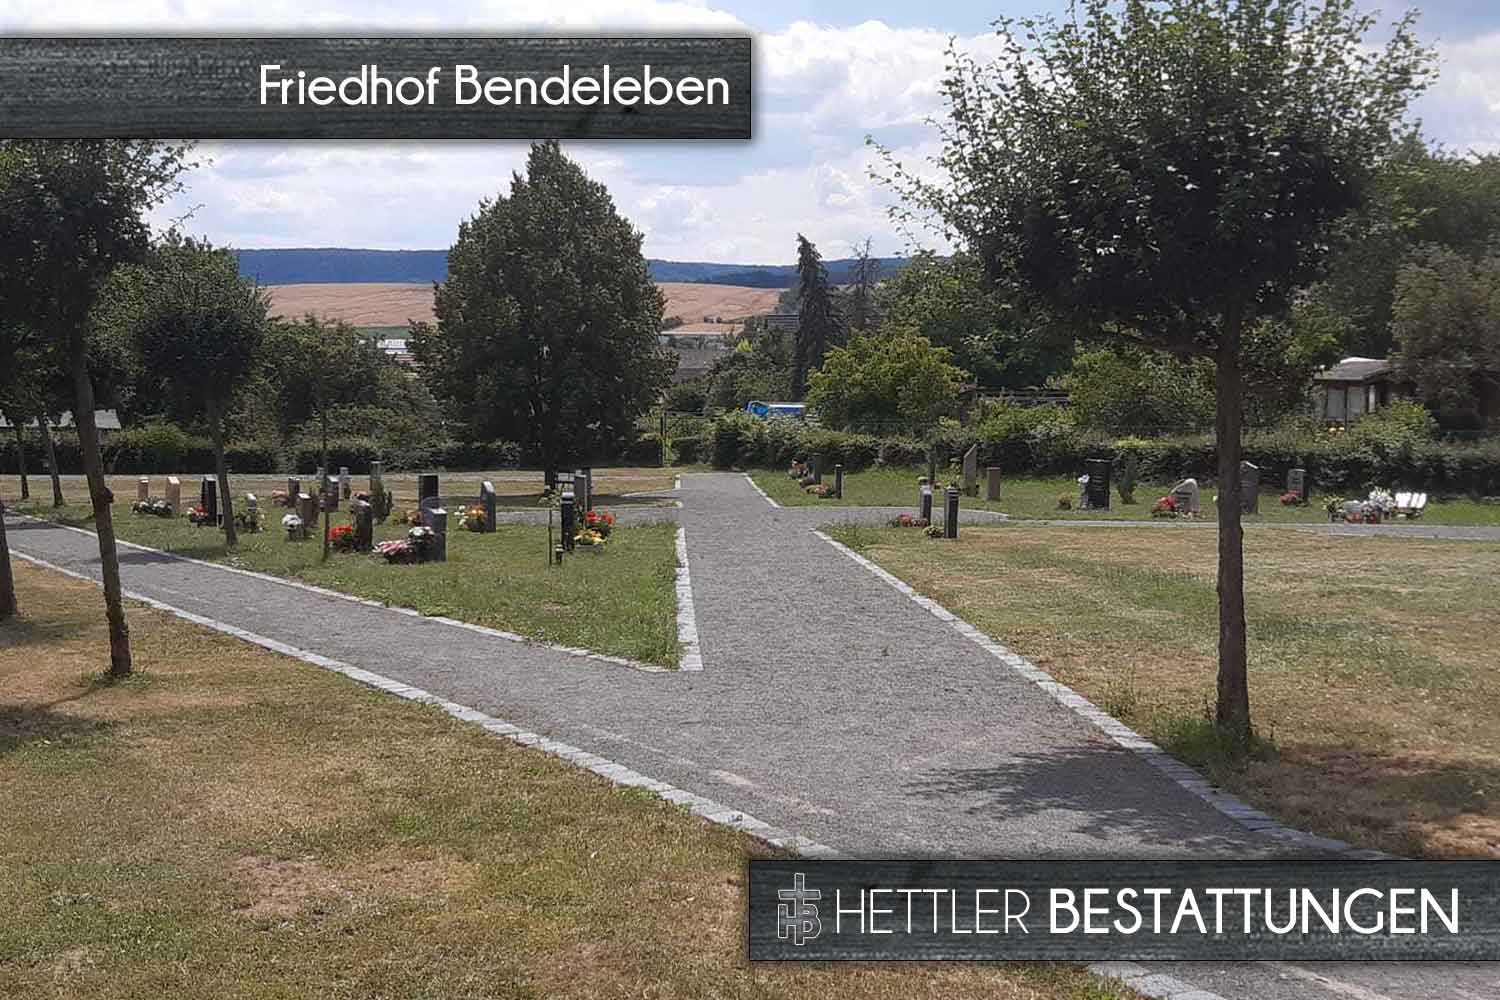 Friedhof in Bendeleben. Ihr Ort des Abschieds mit Hettler Bestattungen.